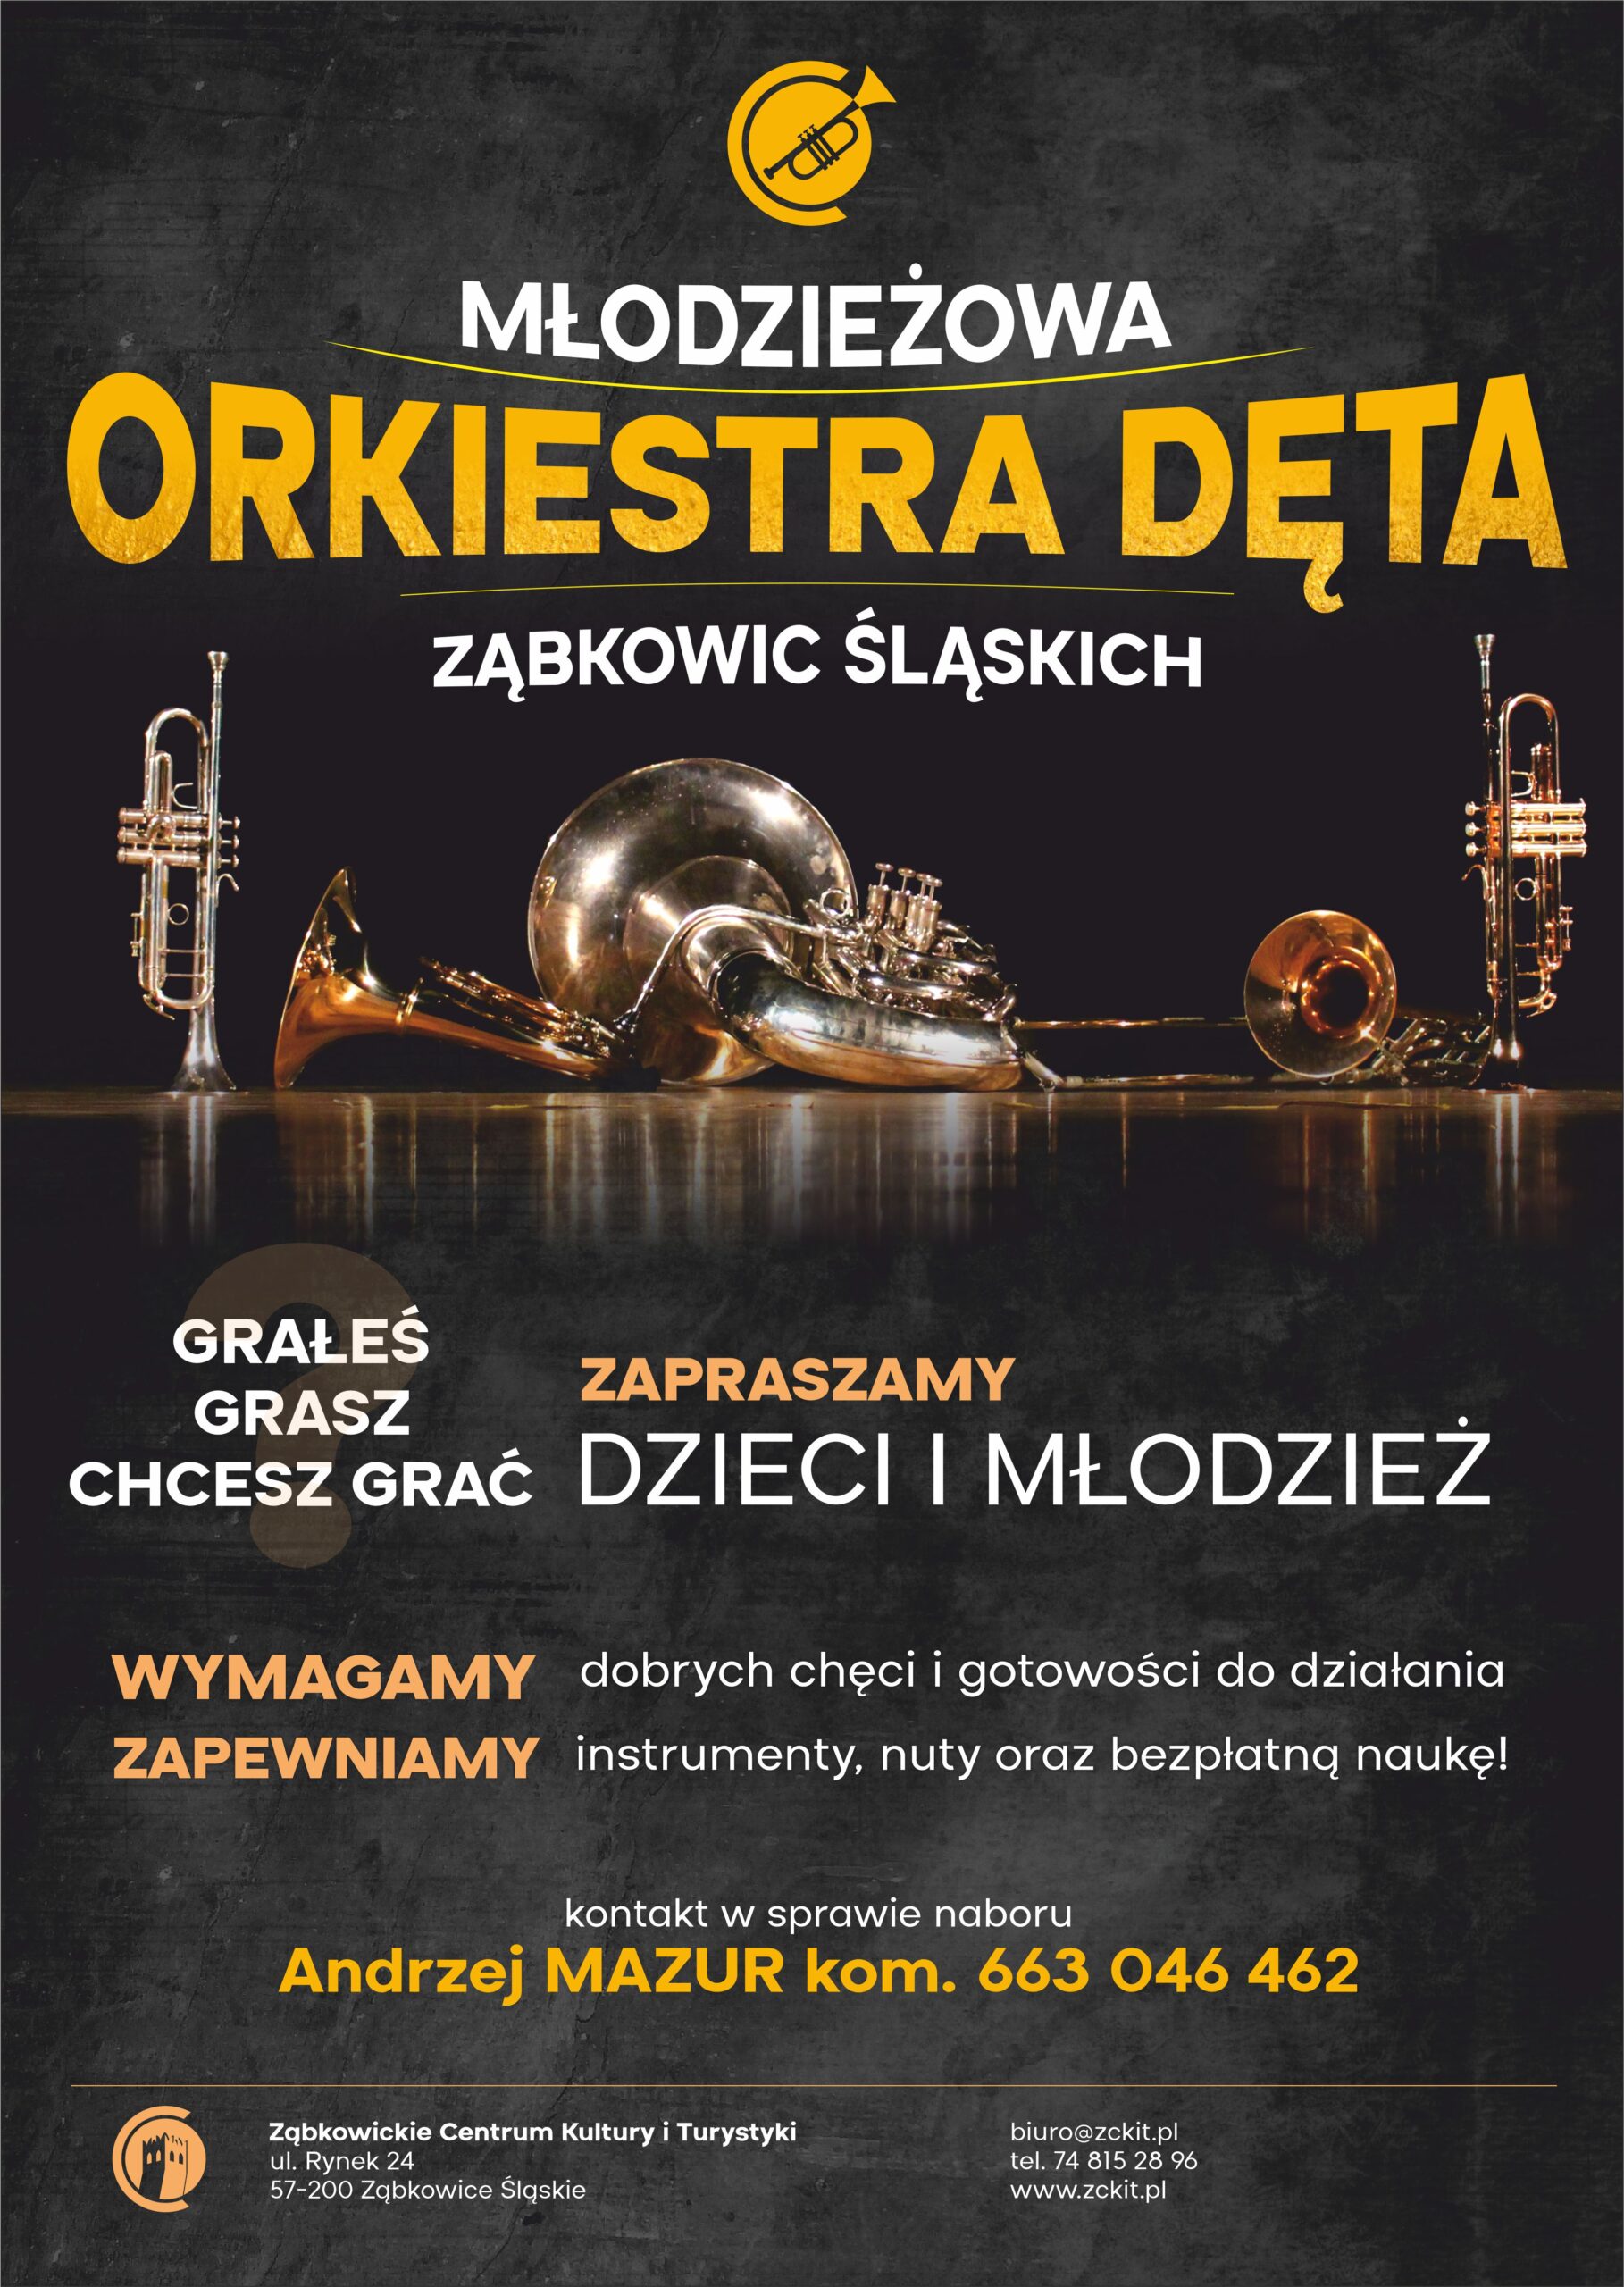 Plakat informacyjny Młodzieżowej Orkiestry Dętej w Ząbkowicach Śląskich. W tle zdjęcia instrumentów na szarym tle.